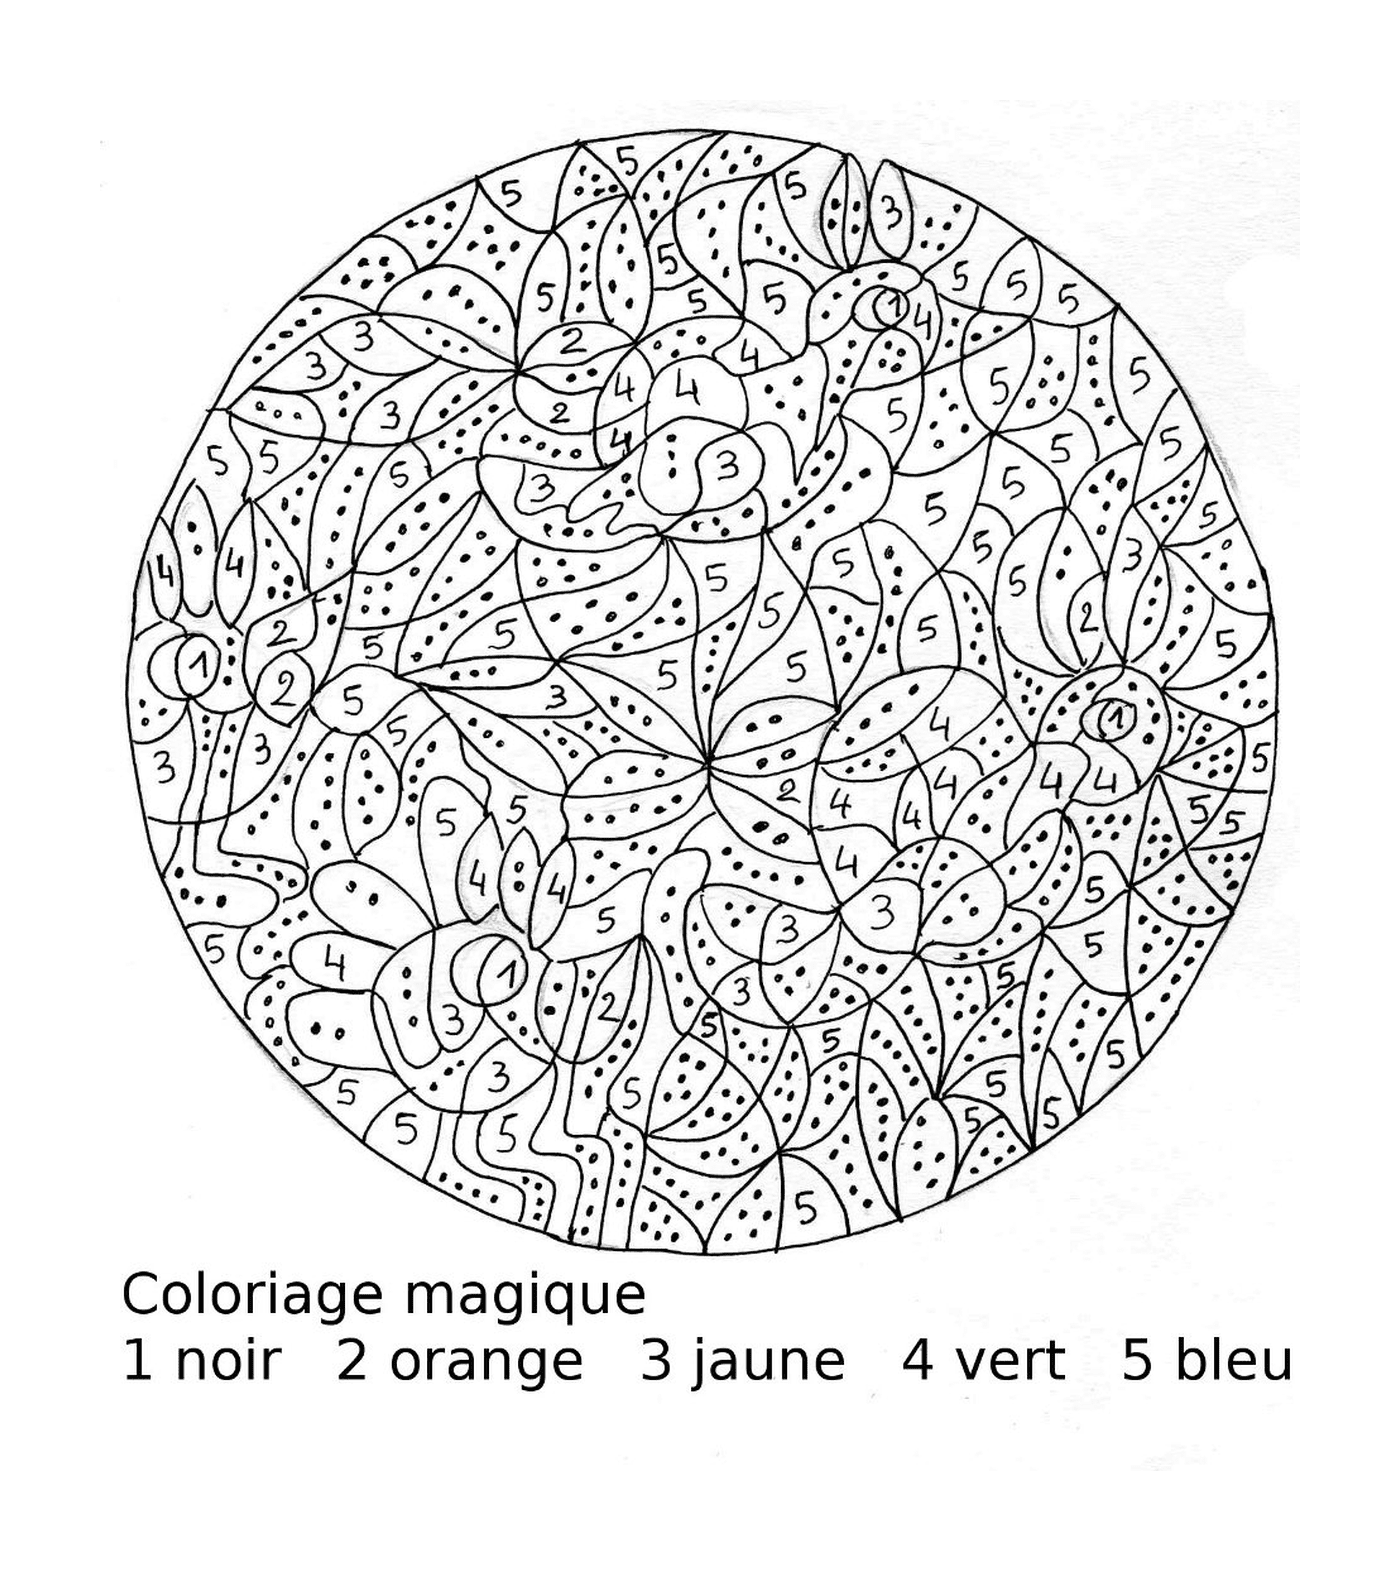   Un dessin circulaire avec des chiffres 